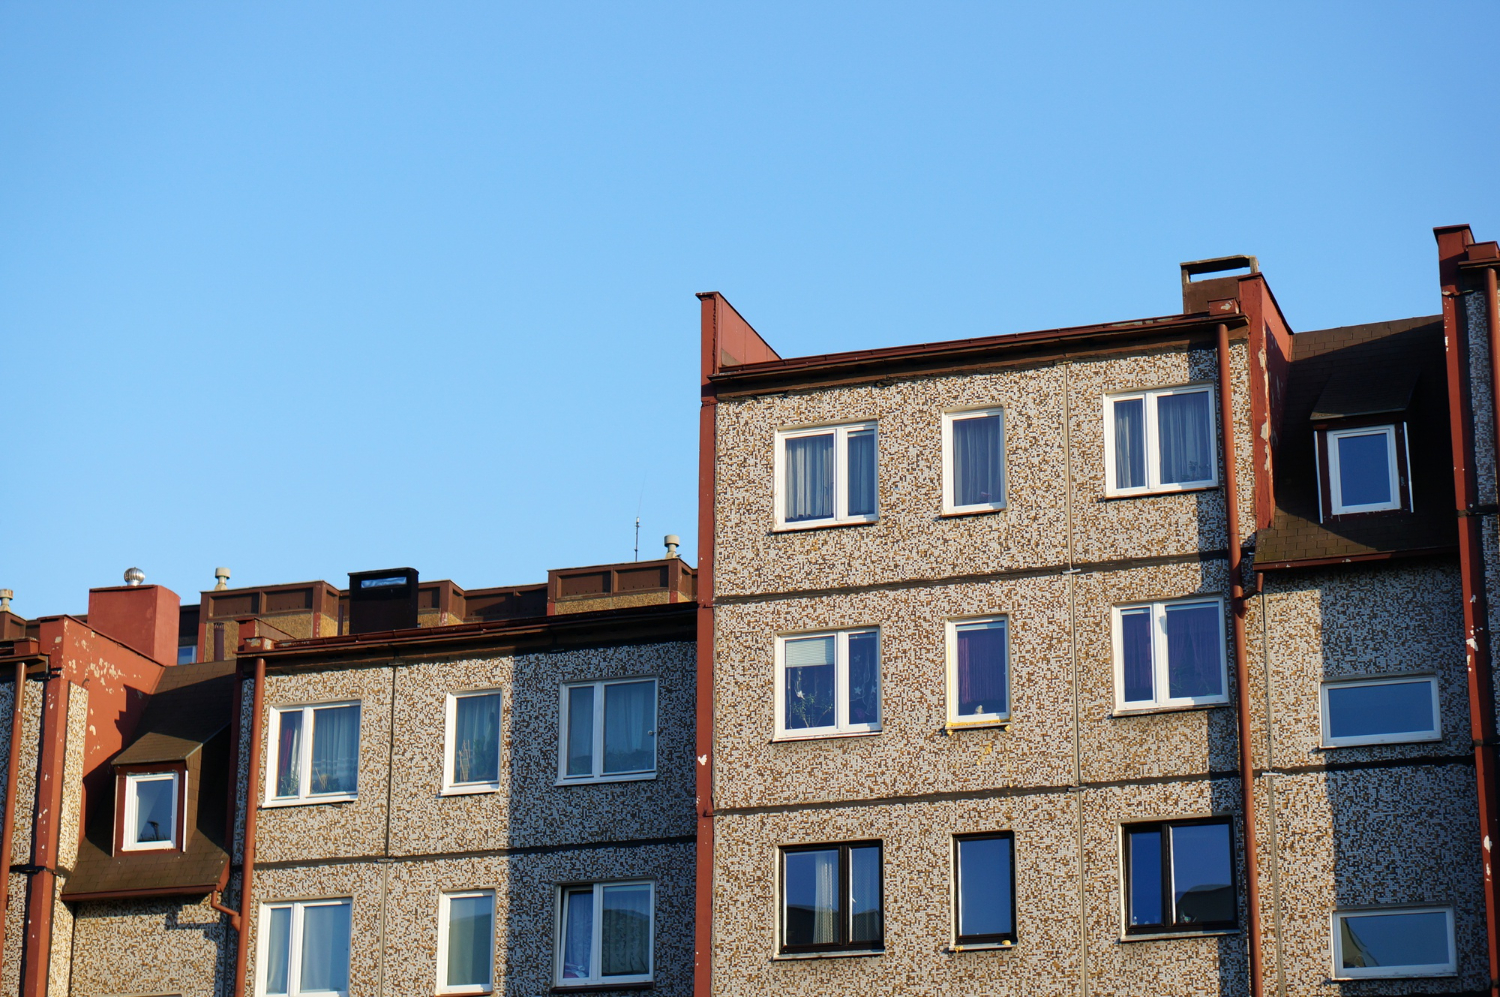 Facade Row Apartment Buildings Against Clear Blue Sky